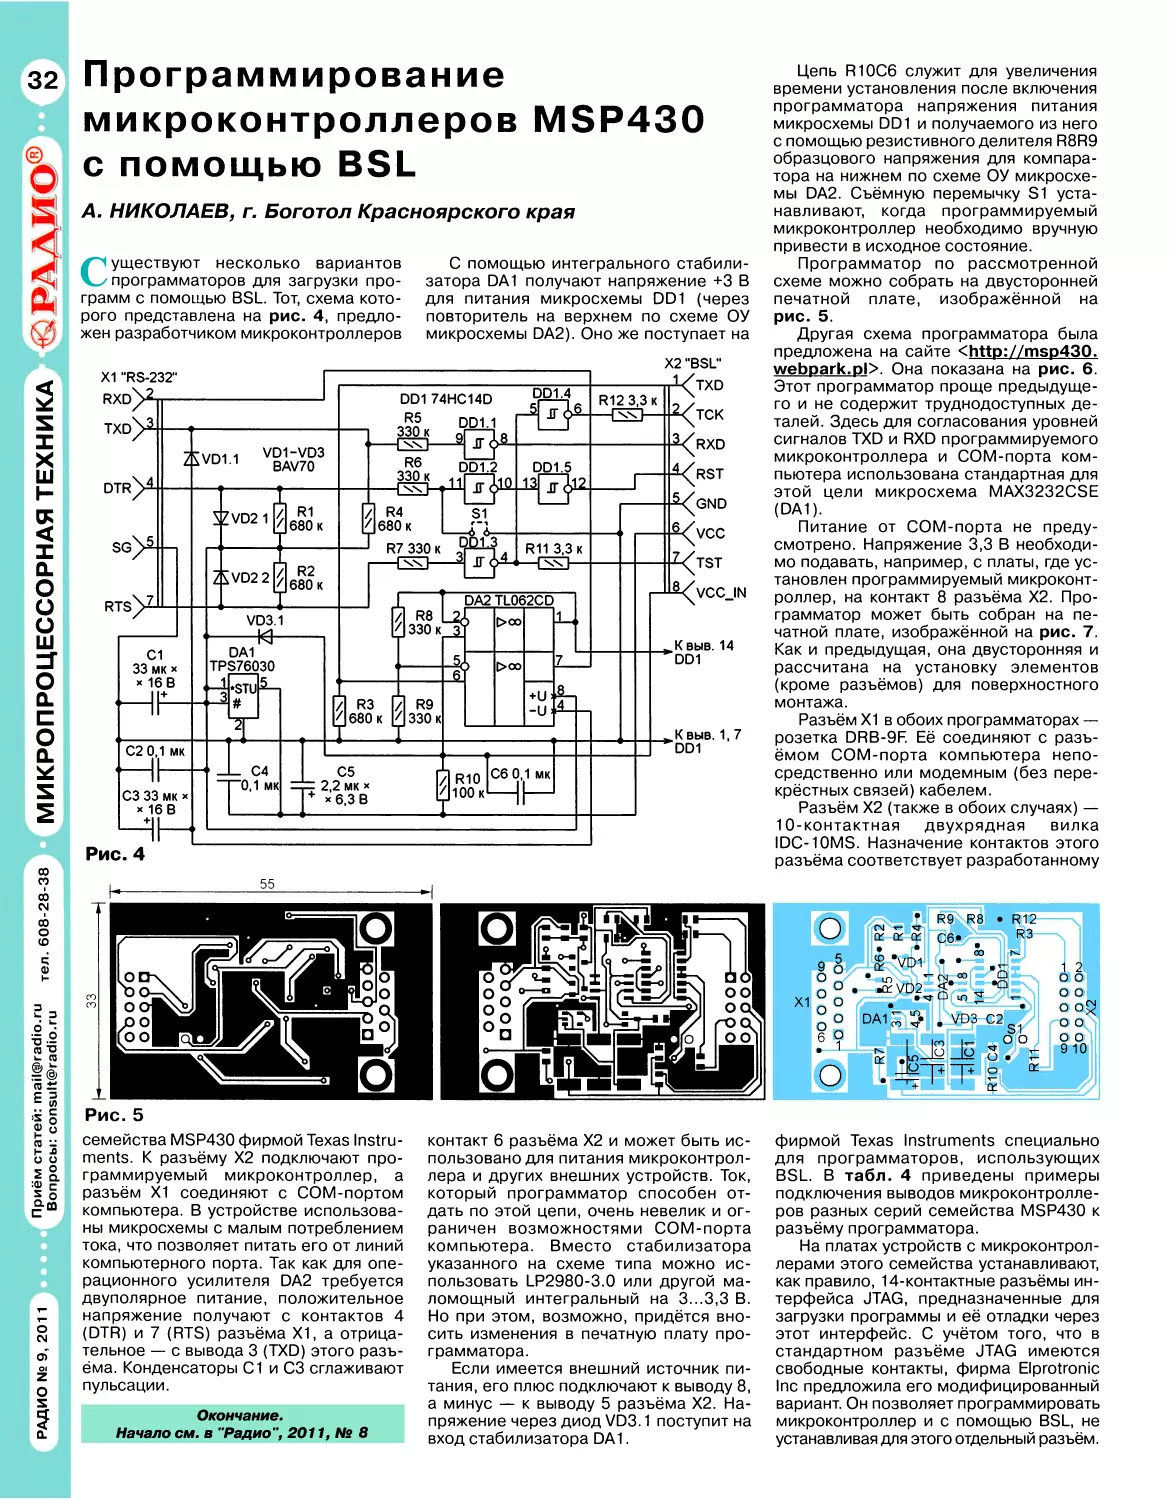 А. НИКОЛАЕВ. Программирование микроконтроллеров MSP430 с помощью BSL